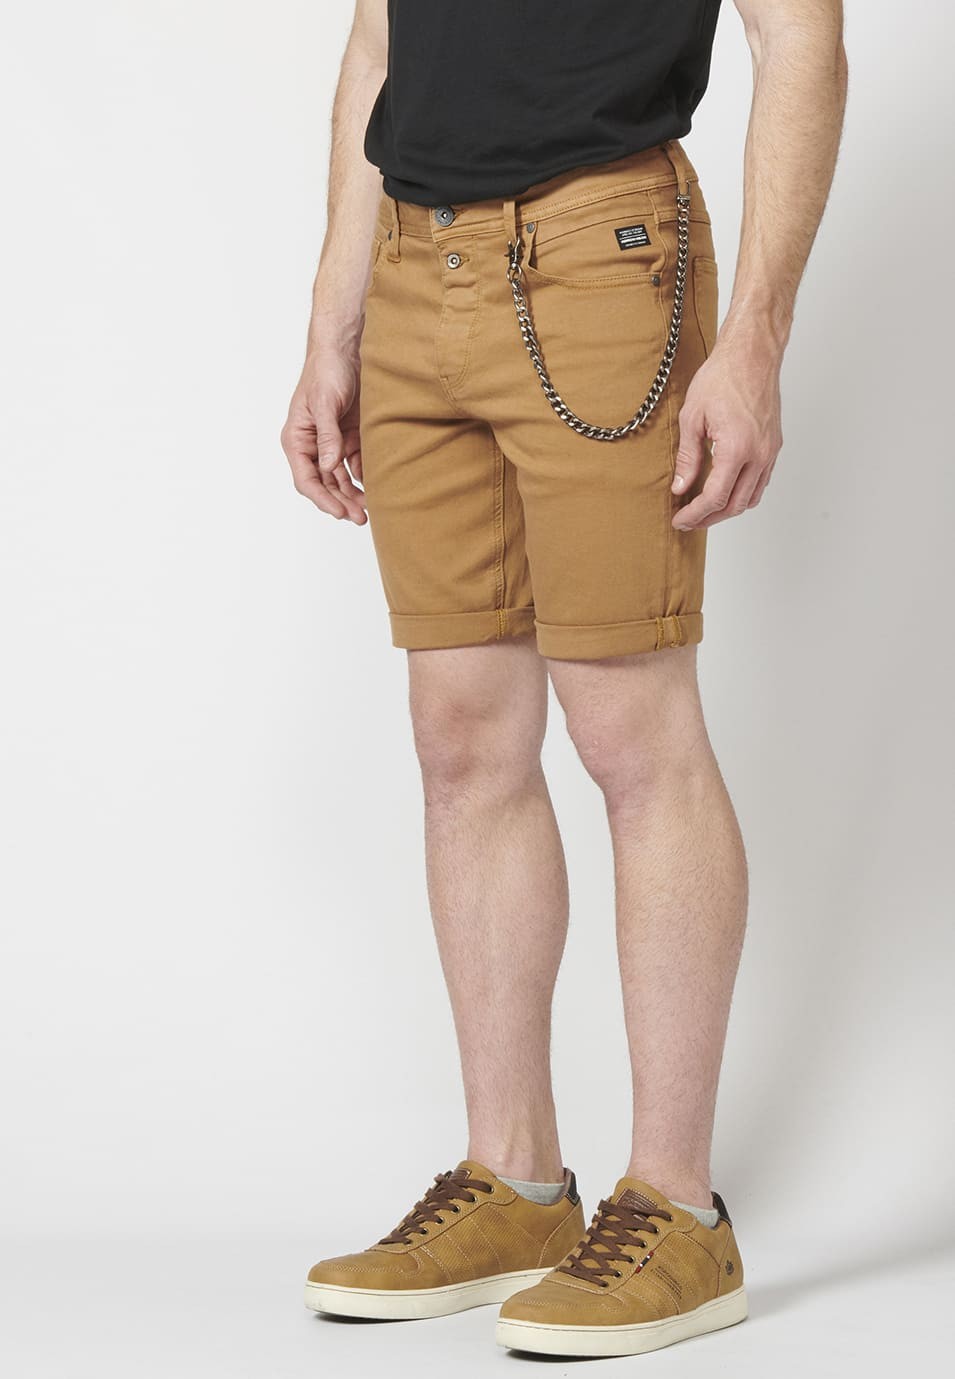 Pantalon corto color tapered fit con detalle de cadena extraíble para Hombre 5